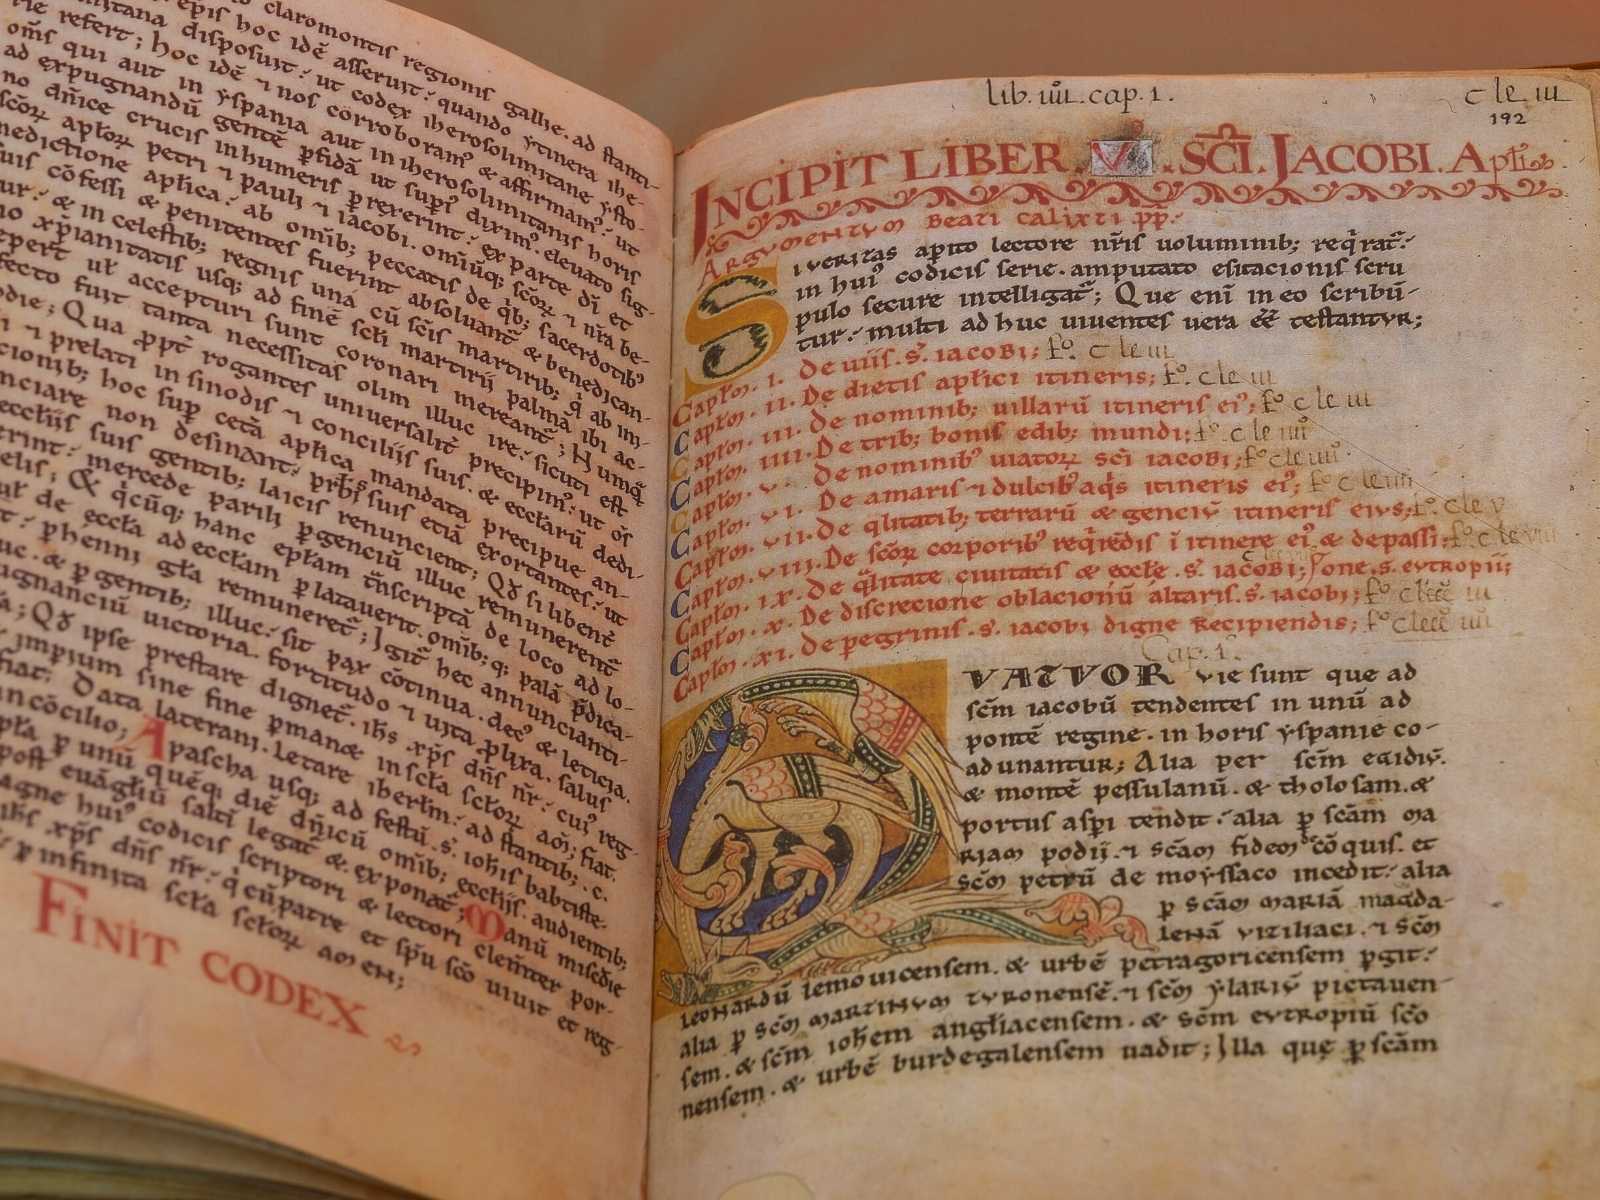 The Codex Calixtinus